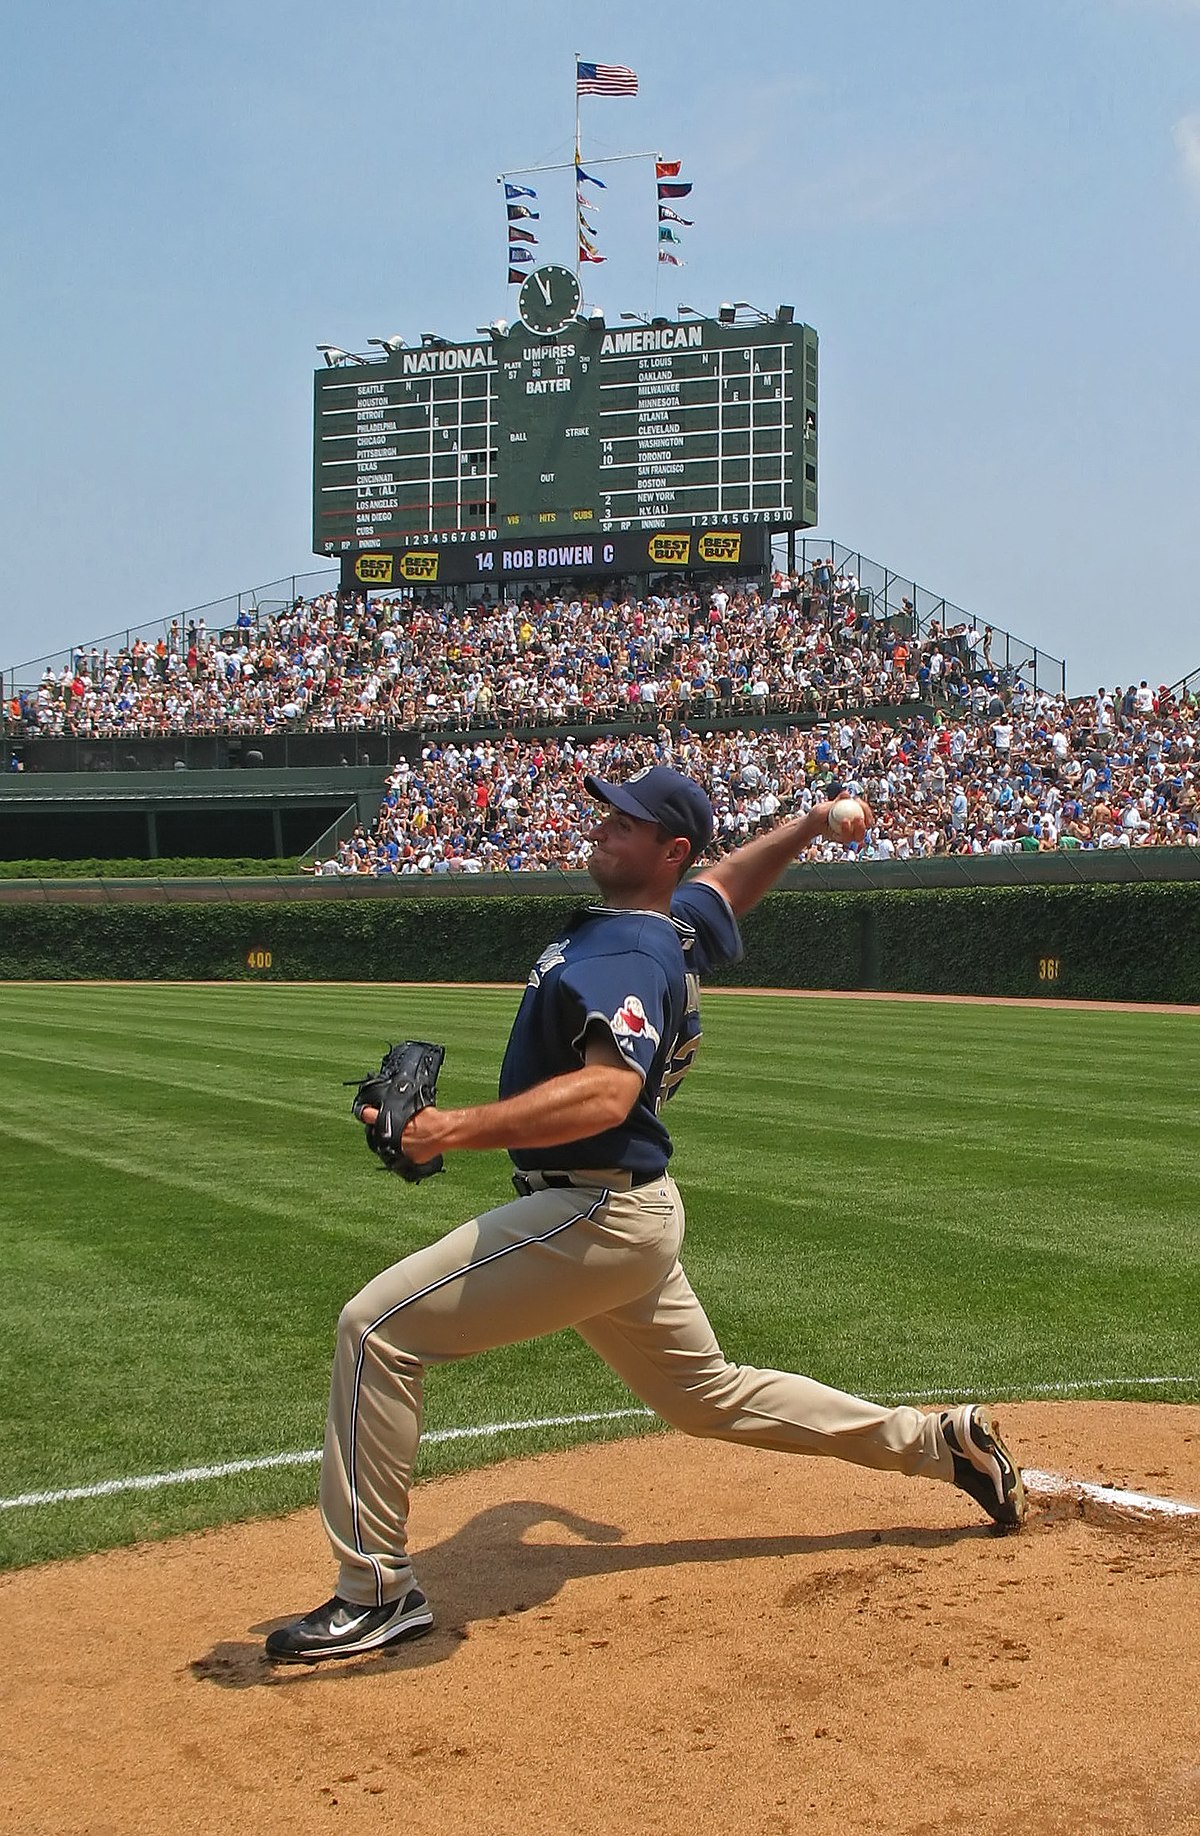 MLB at Field of Dreams - Wikipedia